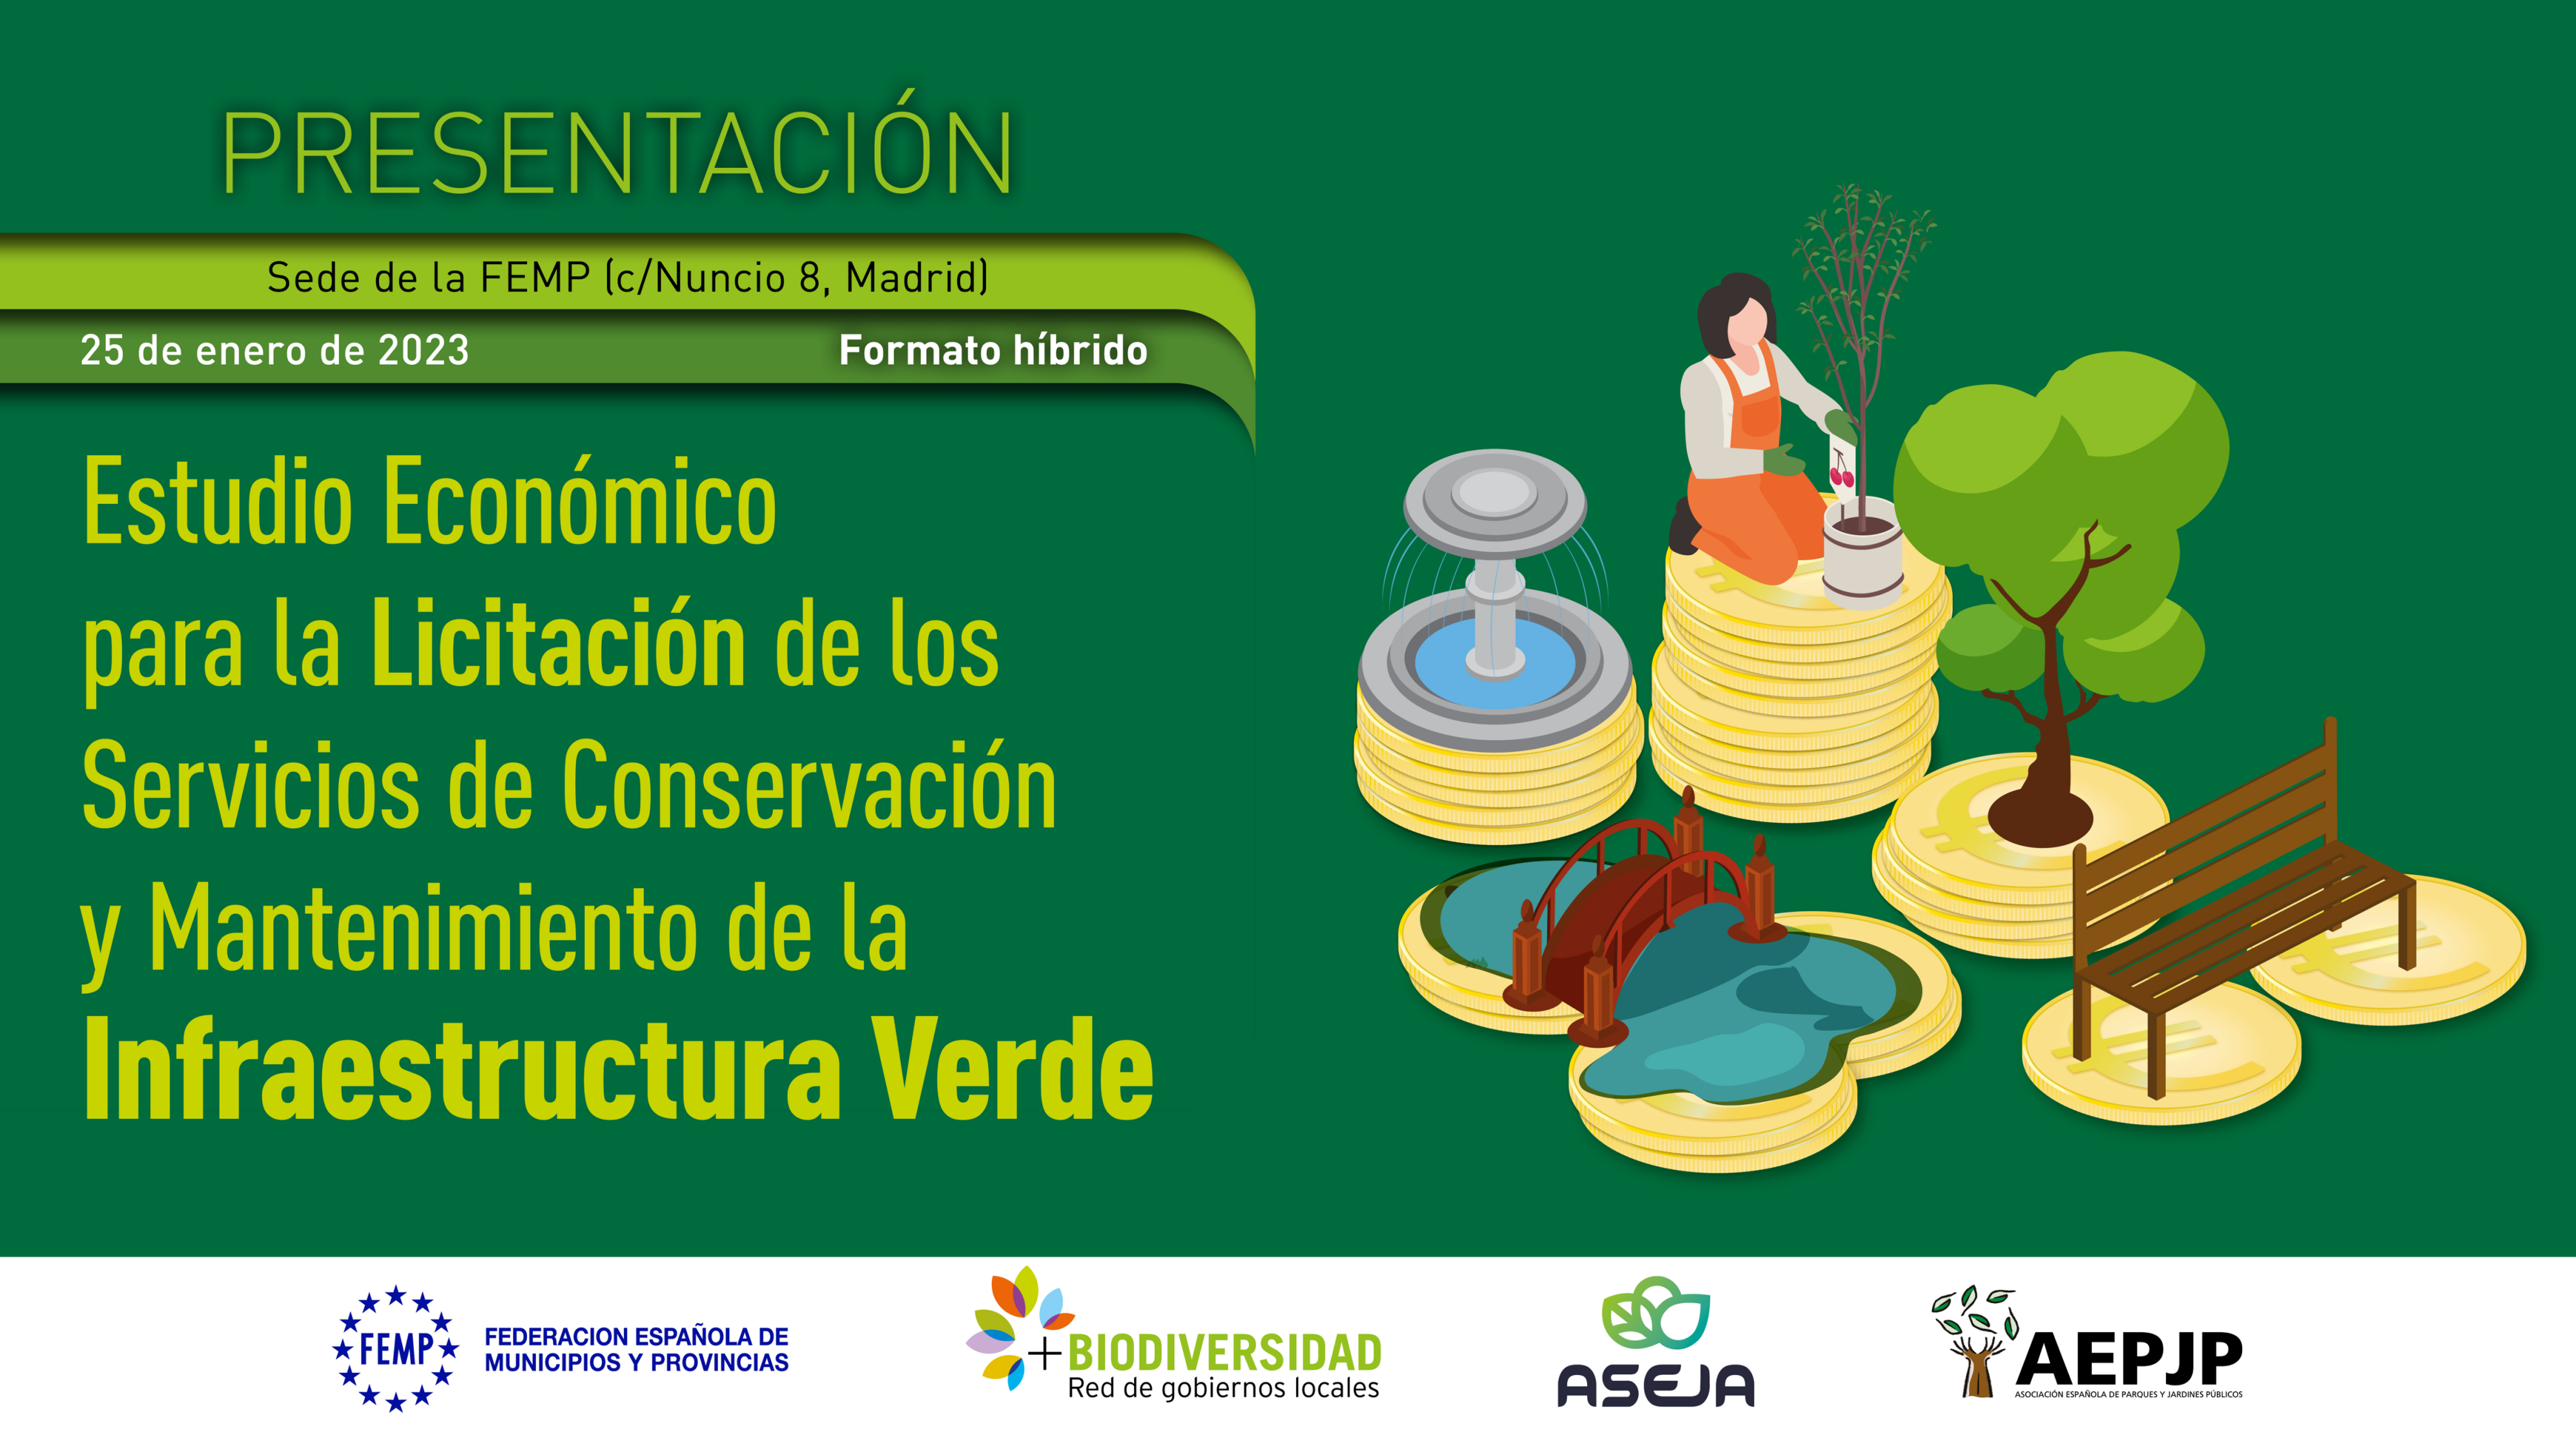 Estudio Económico para la Licitación de los Servicios de Conservación y Mantenimiento de la Infraestructura Verde